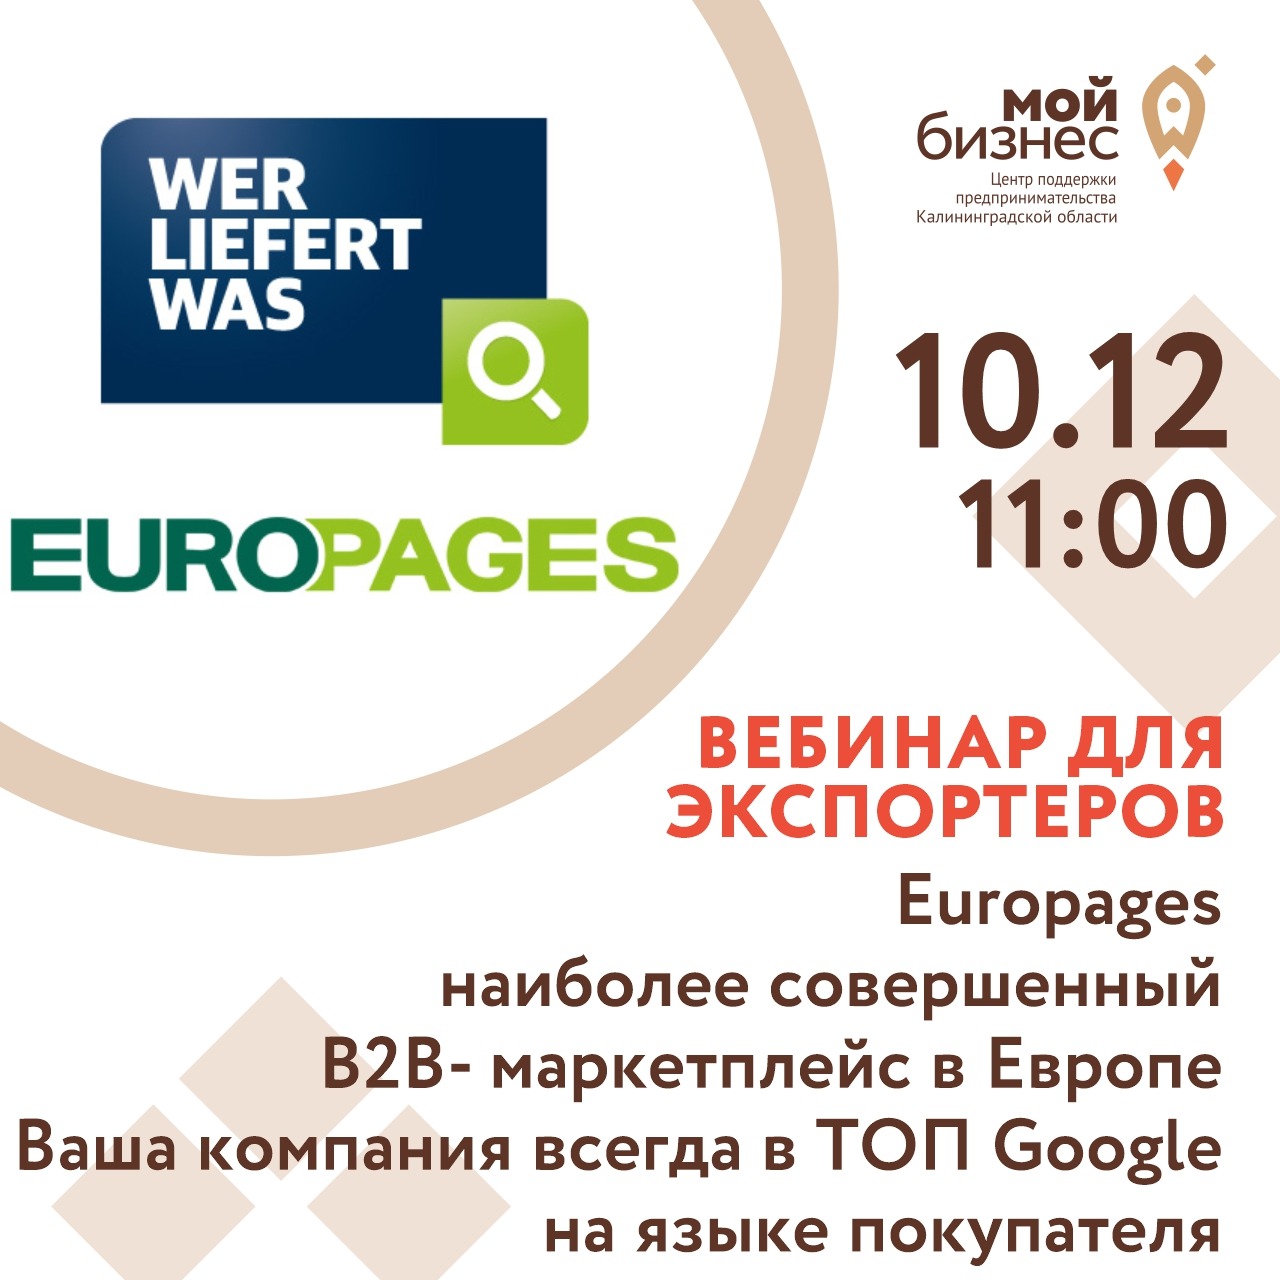 Вебинар для экспортеров "Europages - наиболее совершенный В2В- маркетплейс в Европе. Ваша компания всегда в ТОП Google на языке покупателя"